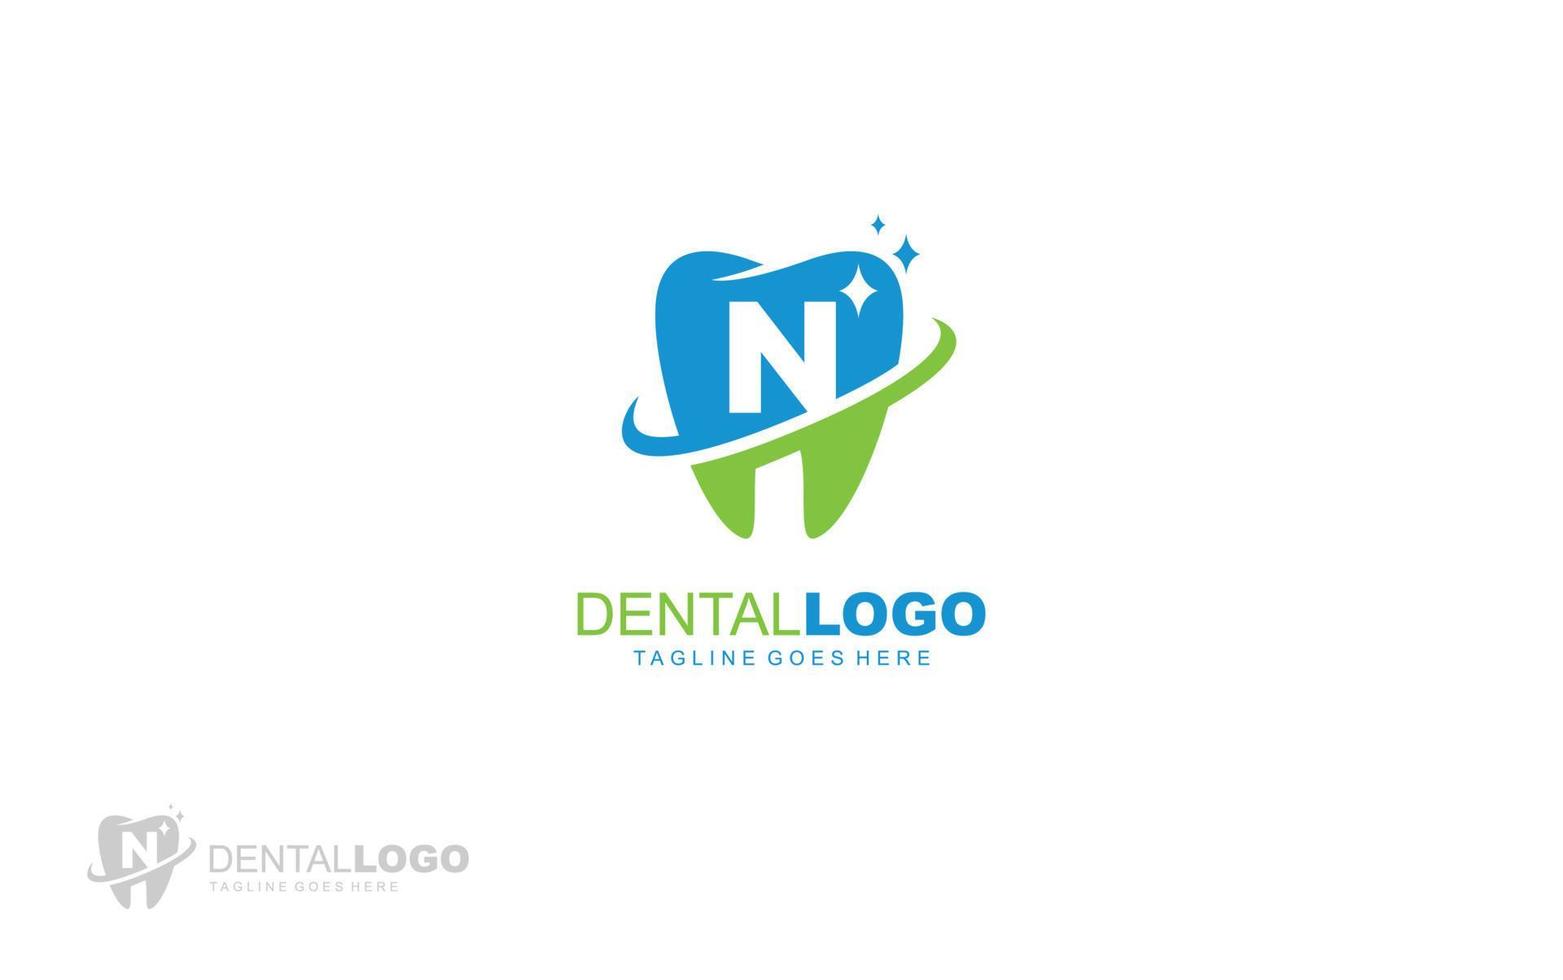 N logo dentist for branding company. letter template vector illustration for your brand.